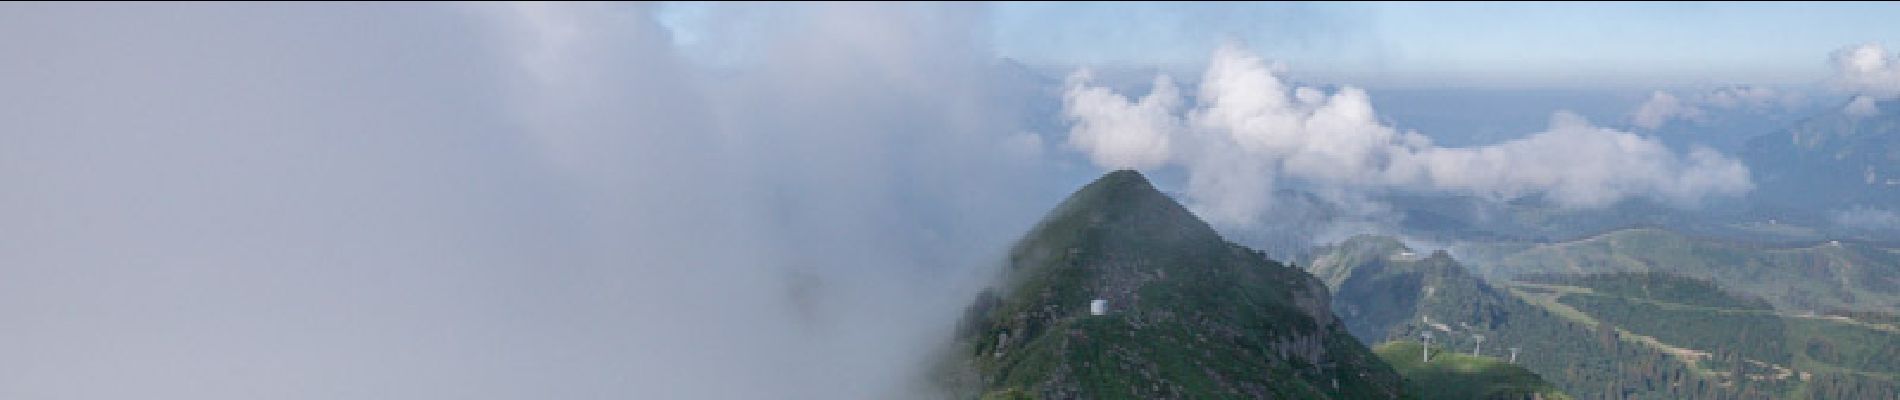 Percorso Marcia Verchaix - La Pointe d'Angolon 2090 m, depuis les Chalets de Joux Plane - Photo